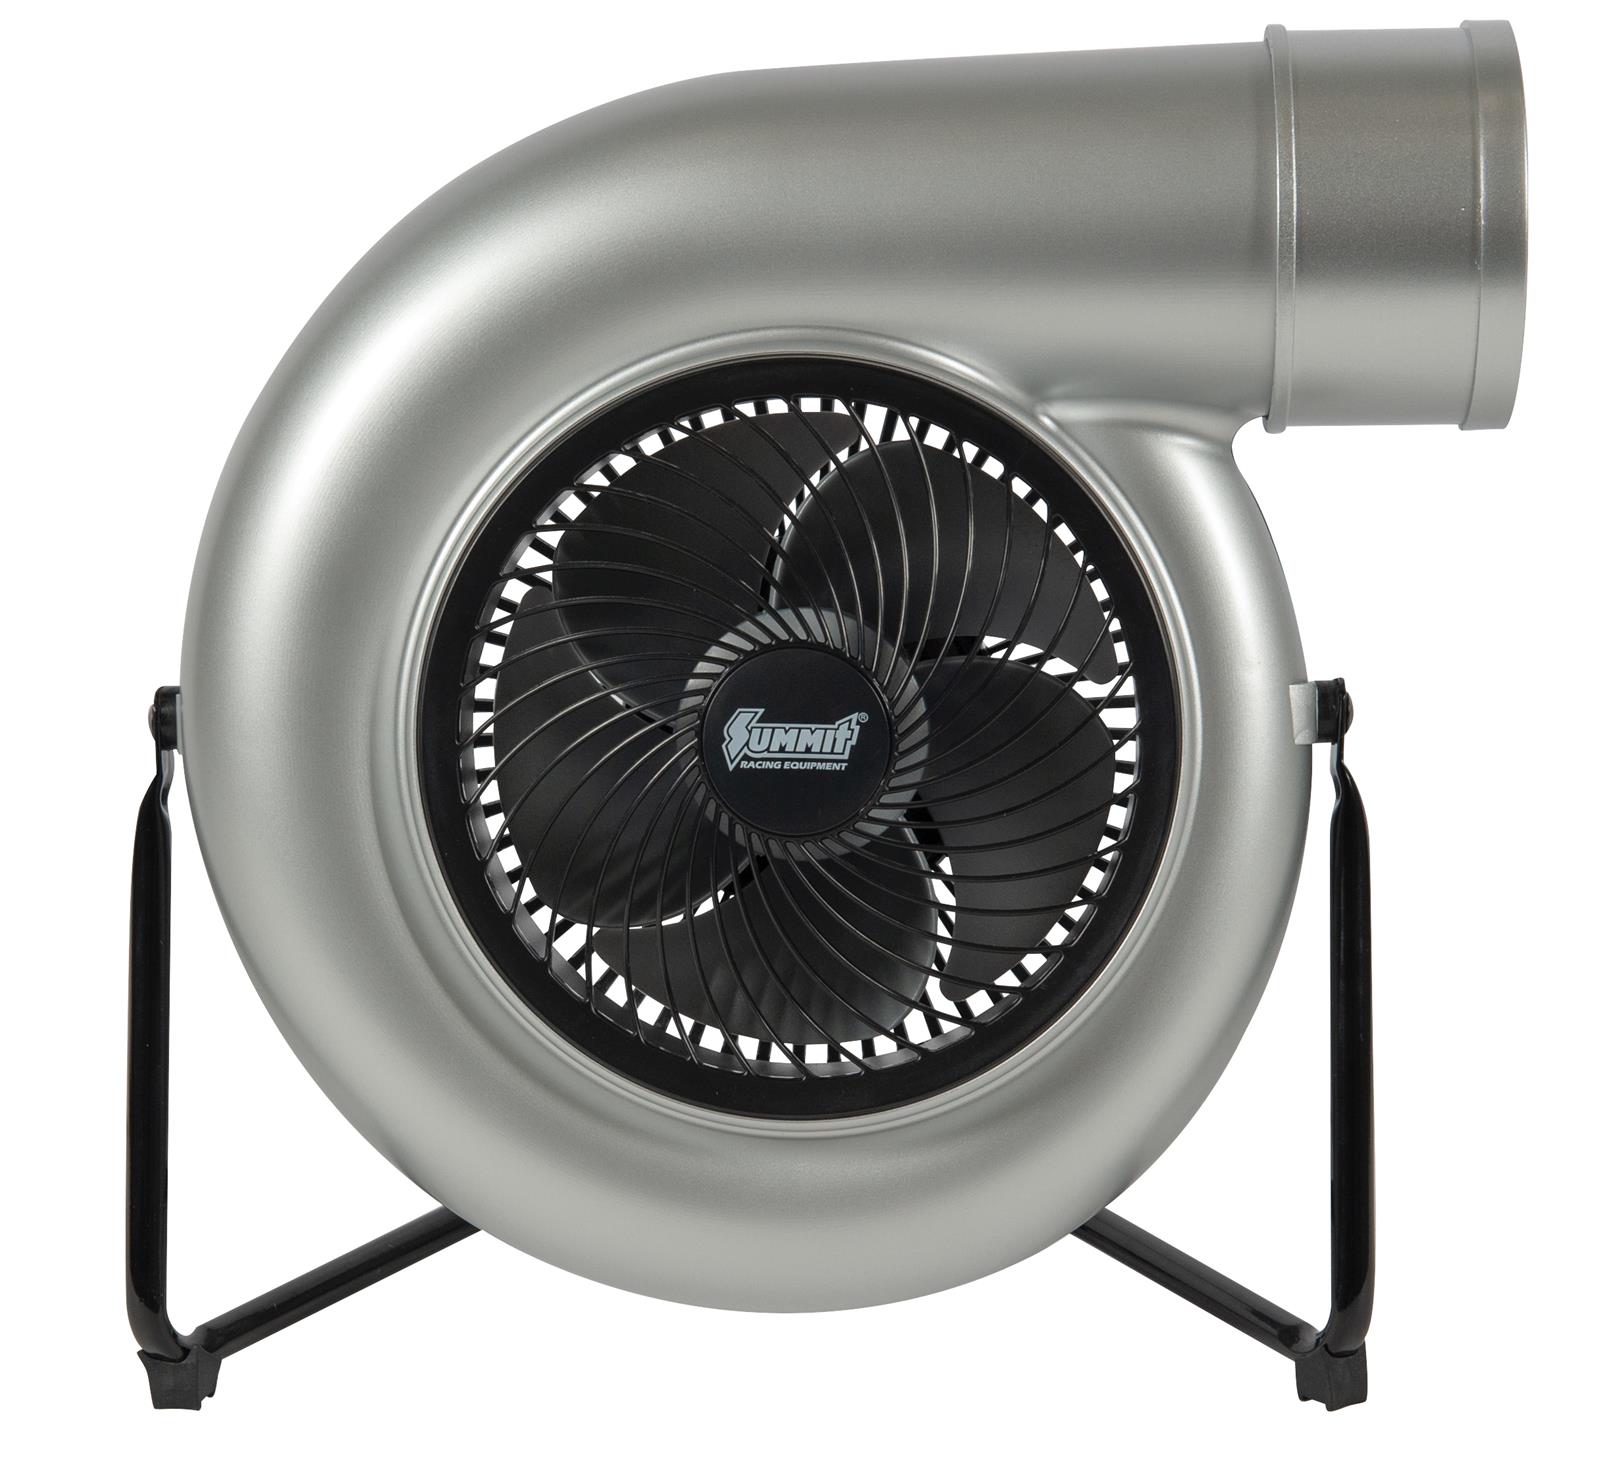 Fan p. Jet Turbo Ventilator. Вентилятор Turbo 100. Мини турбо вентилятор для сушки авто. Turbo Fan PC.